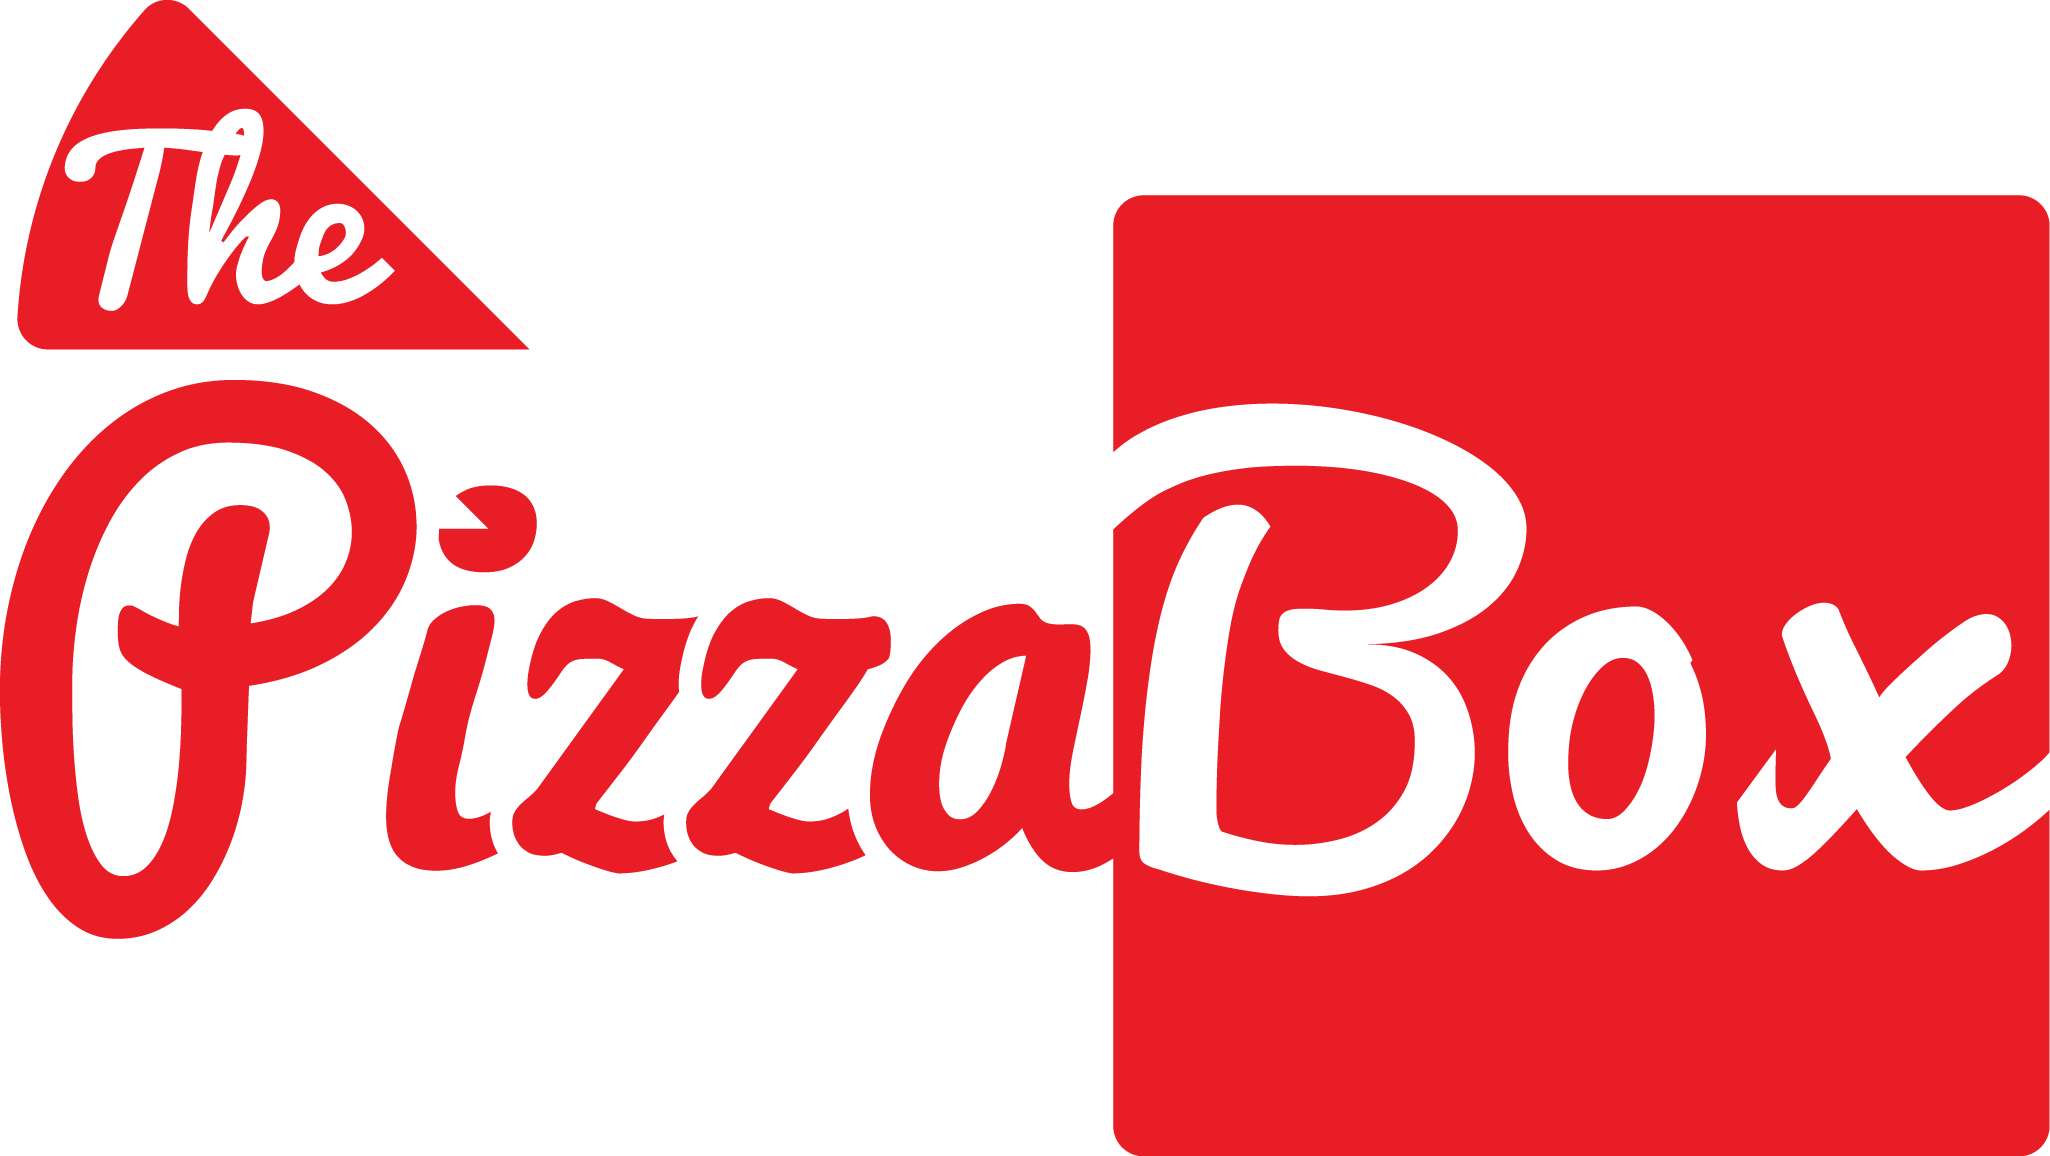 Pizza Box Logo - The Pizza Box Jose of the Uncle Sam Pizza